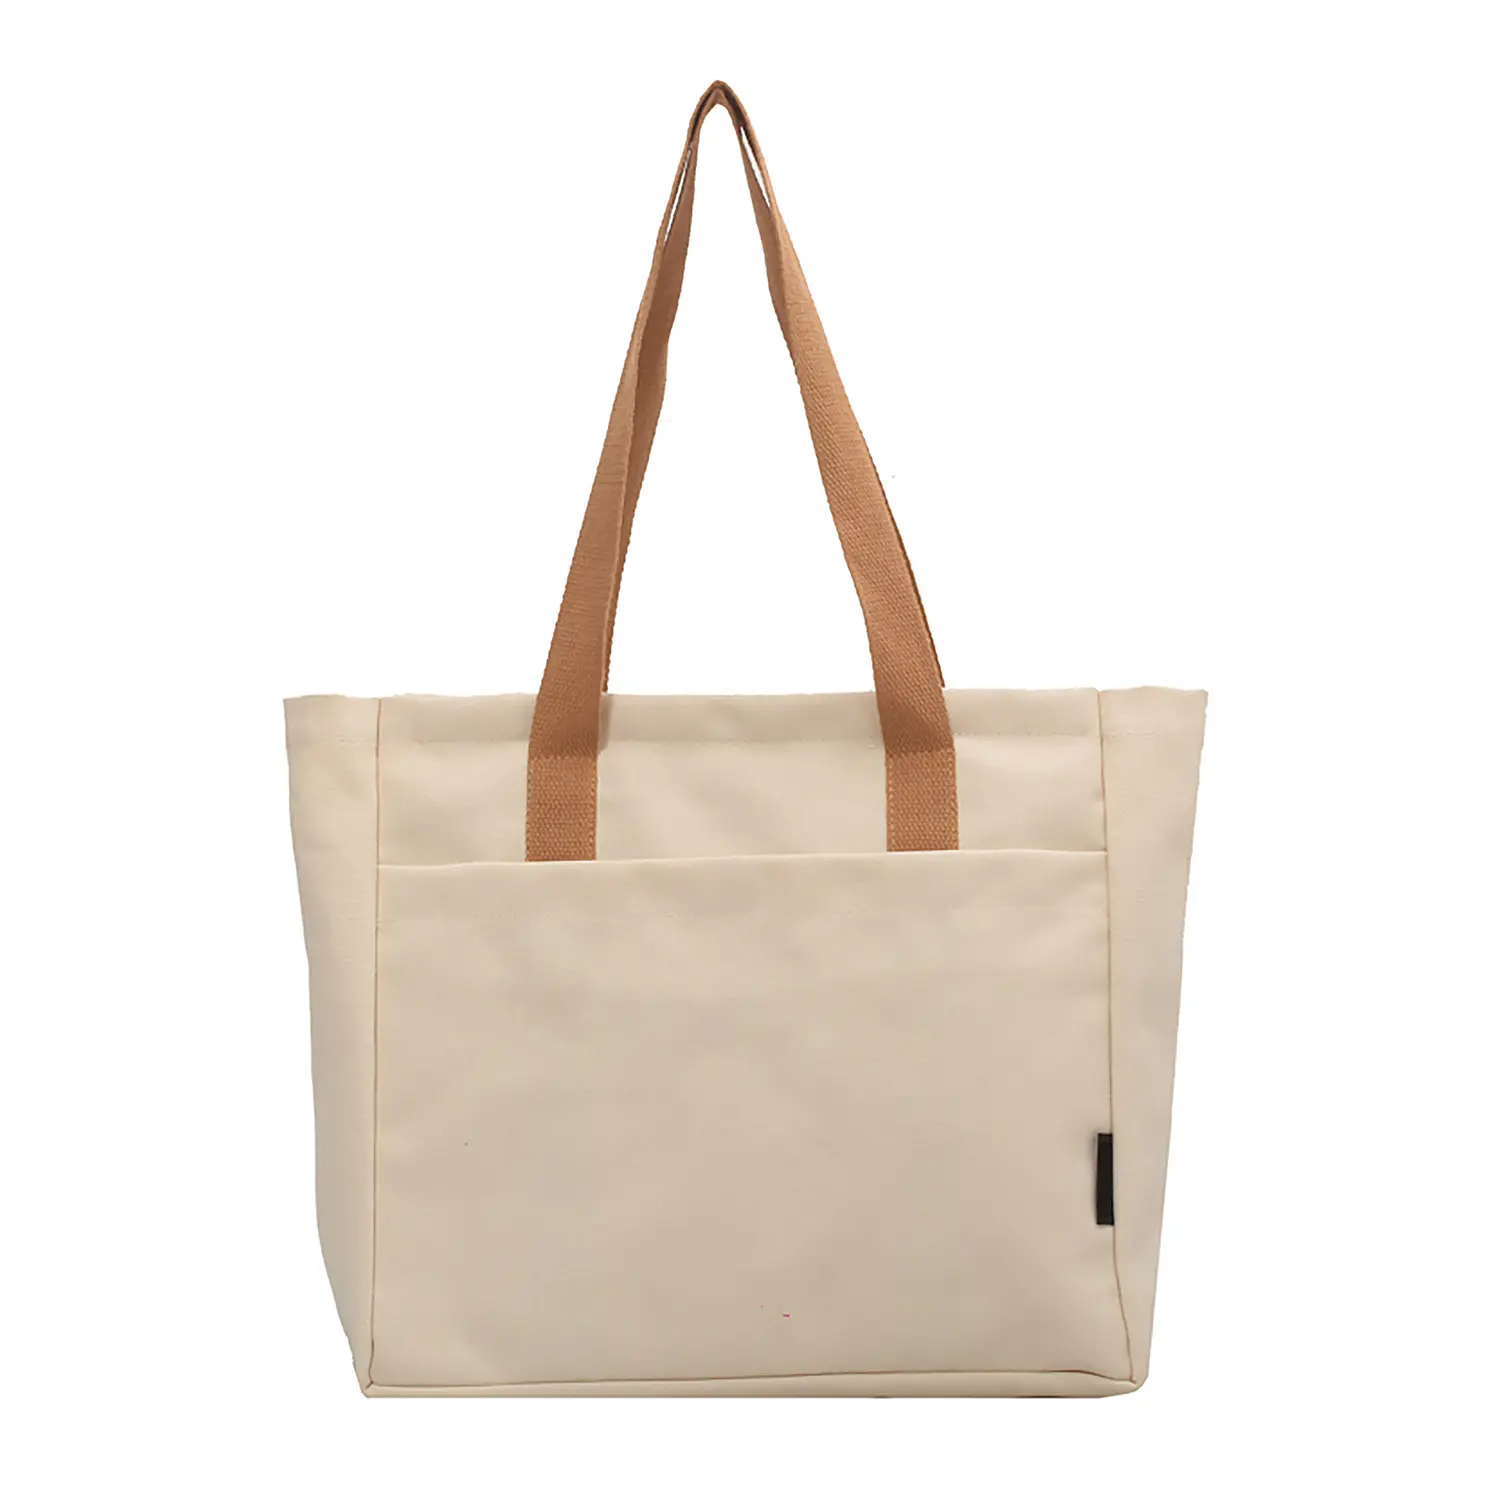 حقيبة ترويجية مصنوعة من القطن والقماش من خامات صديقة للبيئة وقابلة للتخصيص